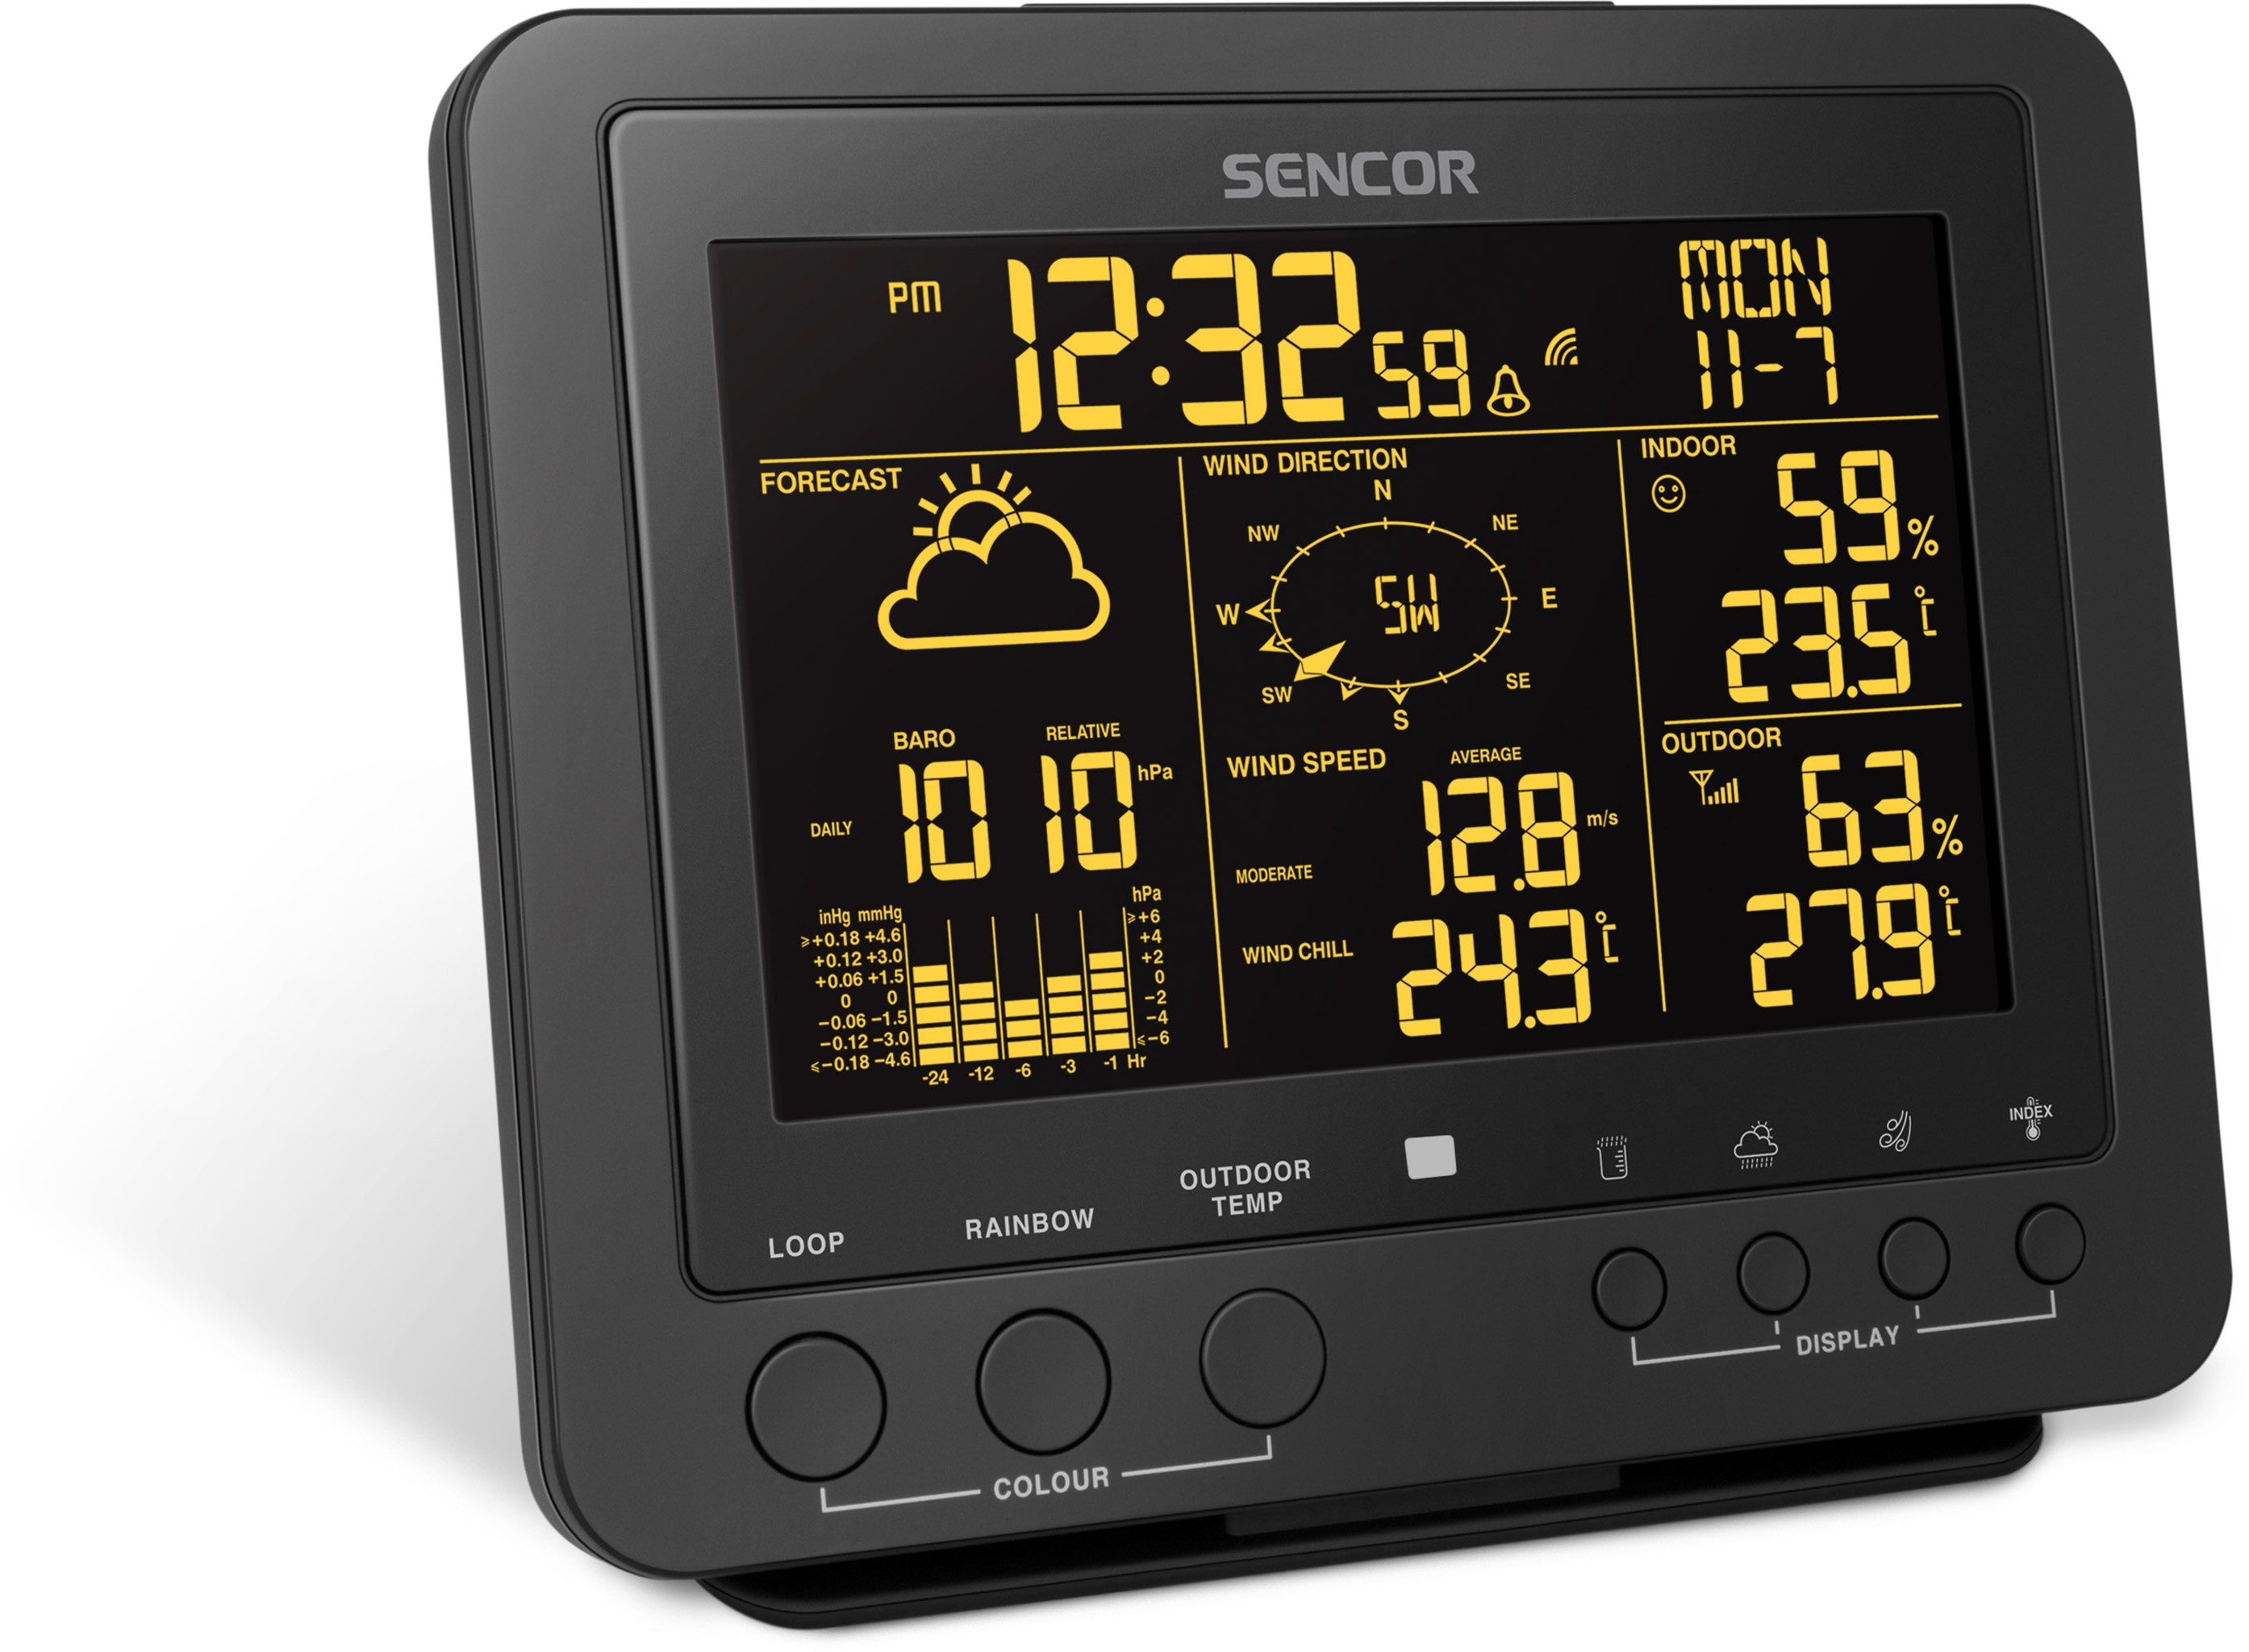 Метеостанция Sencor SWS 9700 отзывы - изображения 5